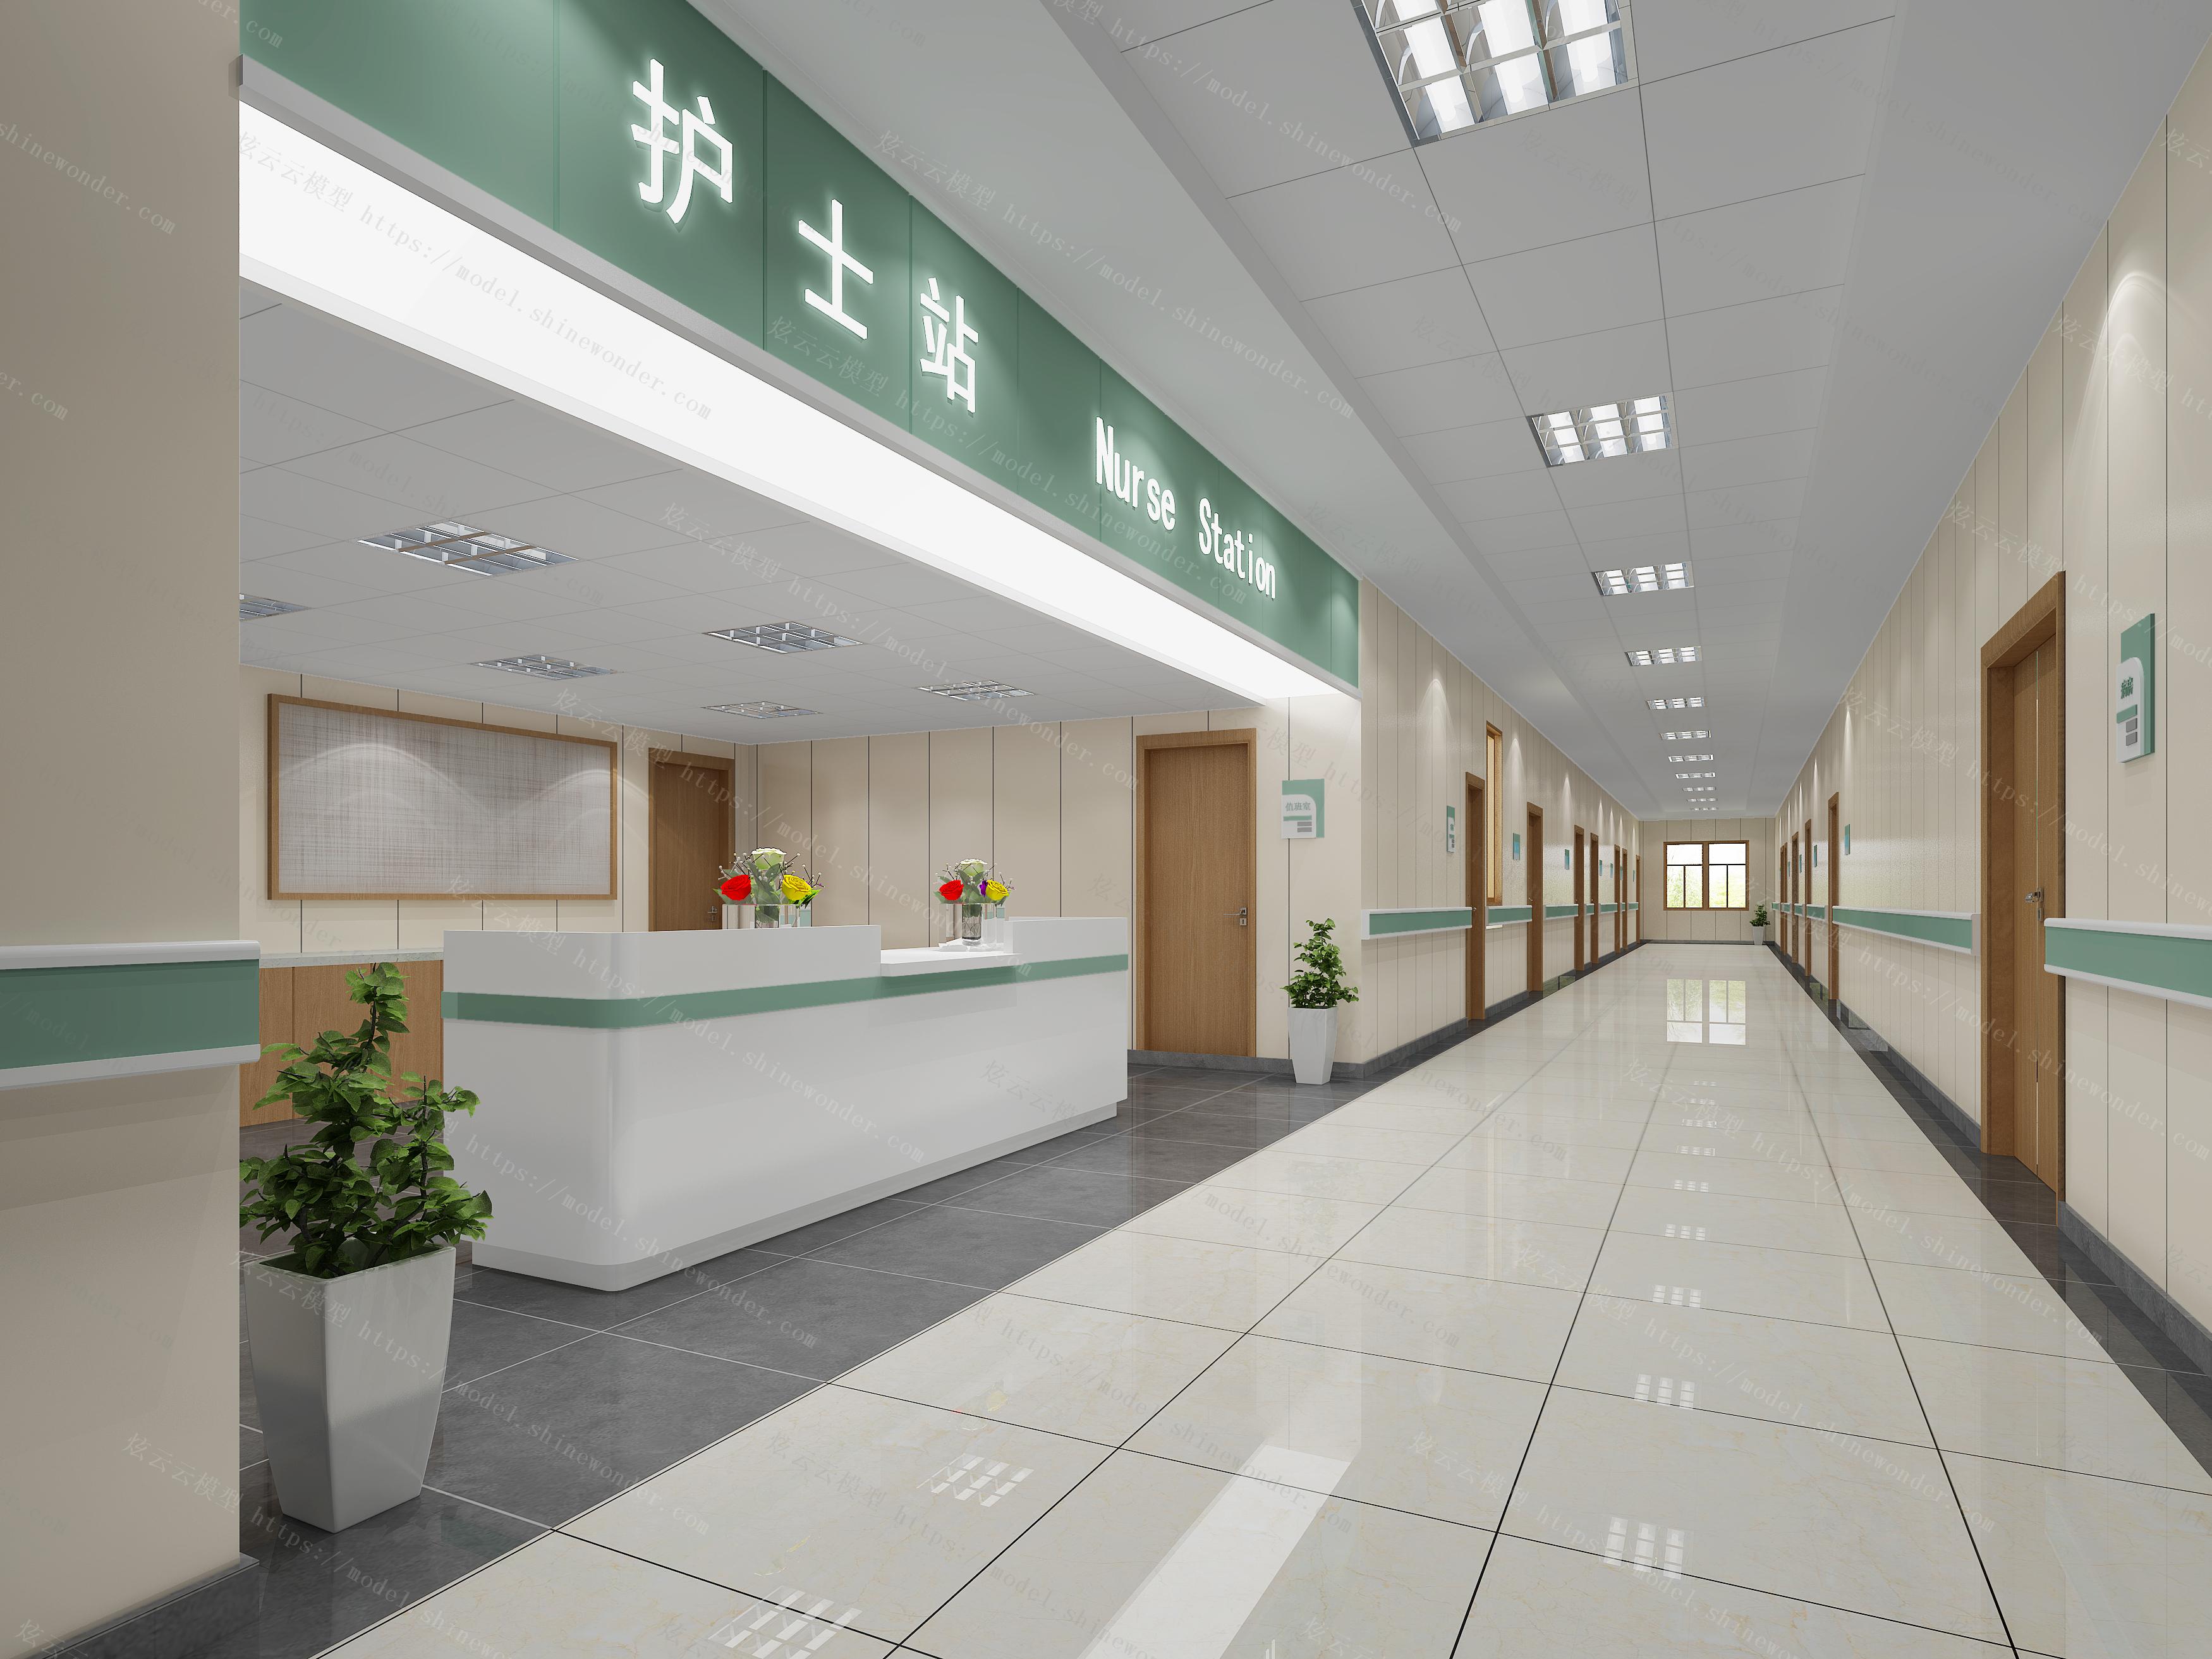 龙岩市第二医院2021年住院医师规范化培训招录简章_龙岩市第二医院